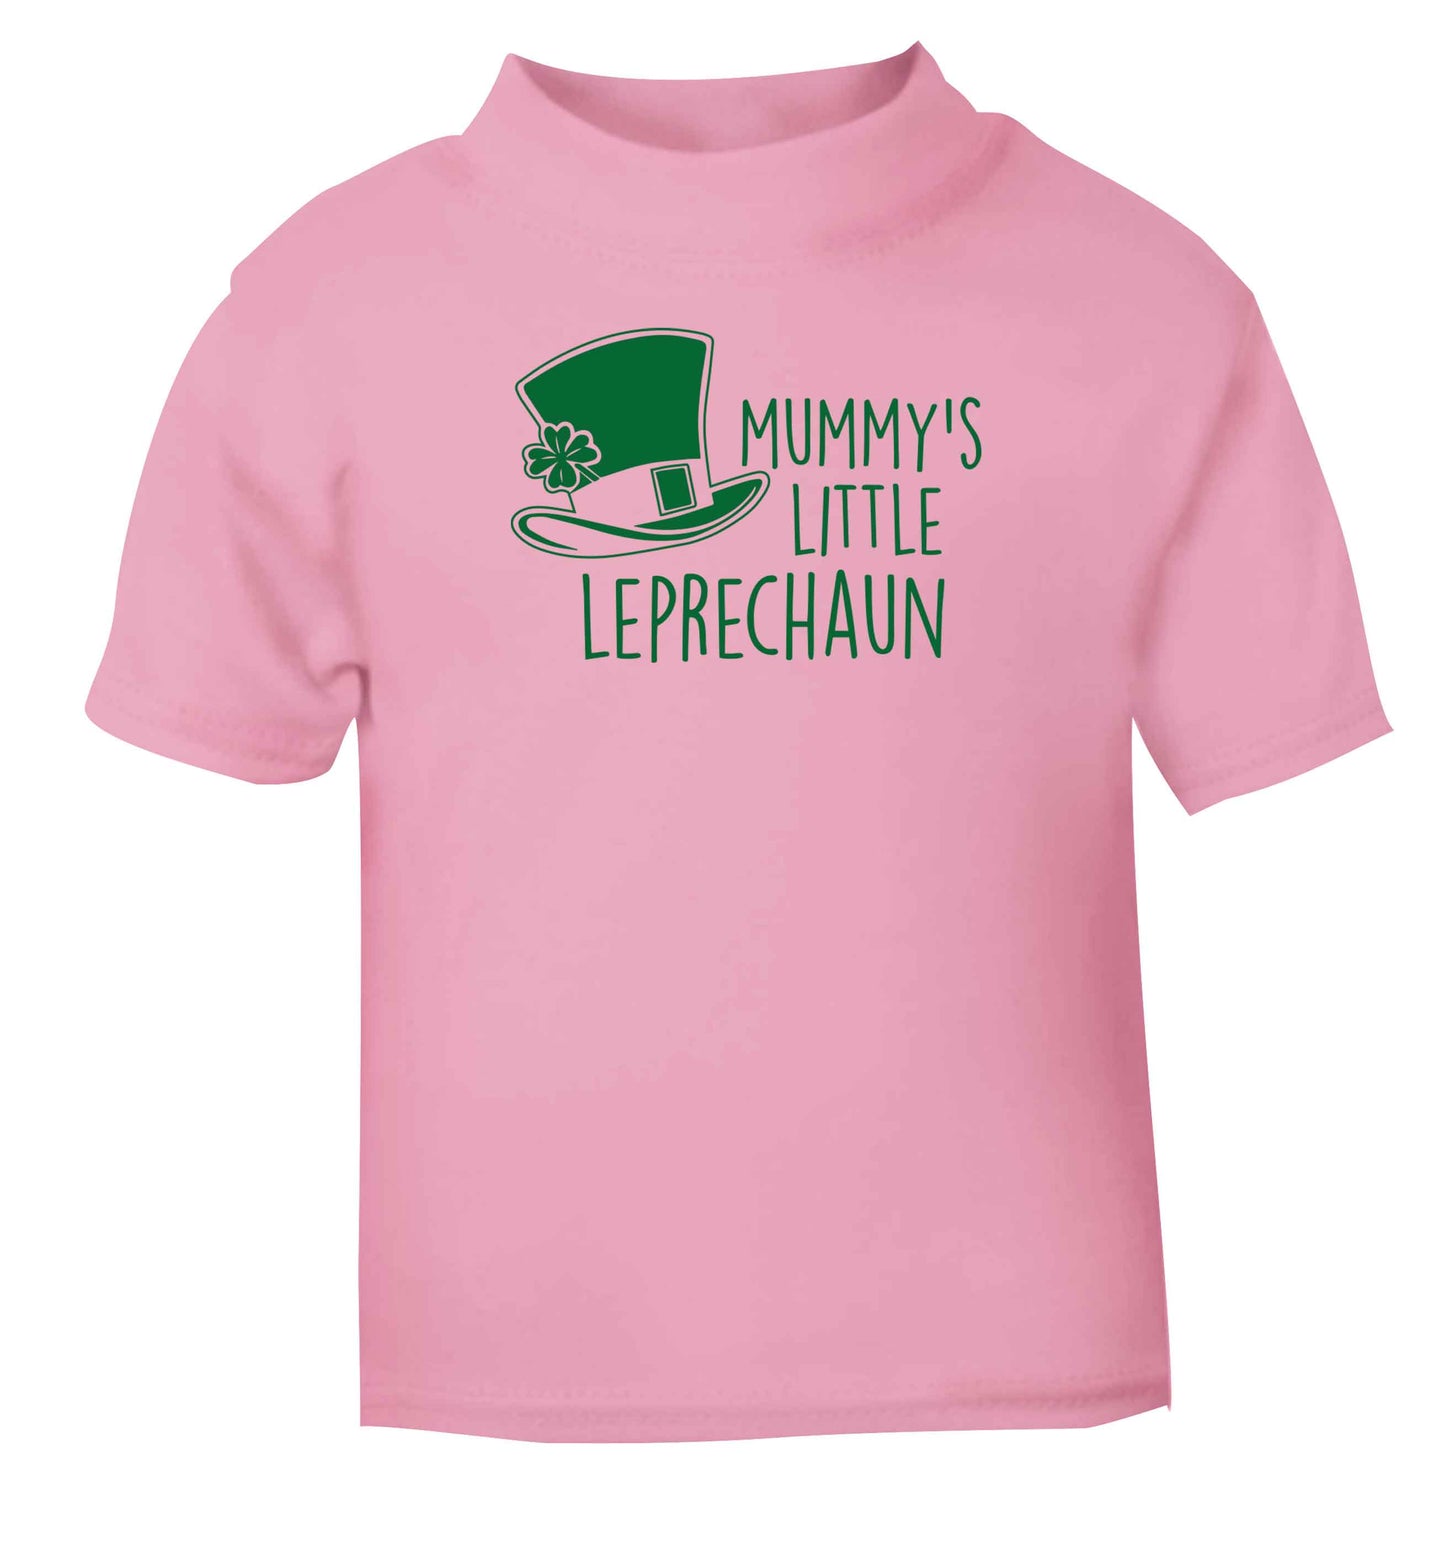 Mummy's little leprechaun Children's light pink Tshirt 12-13 Years